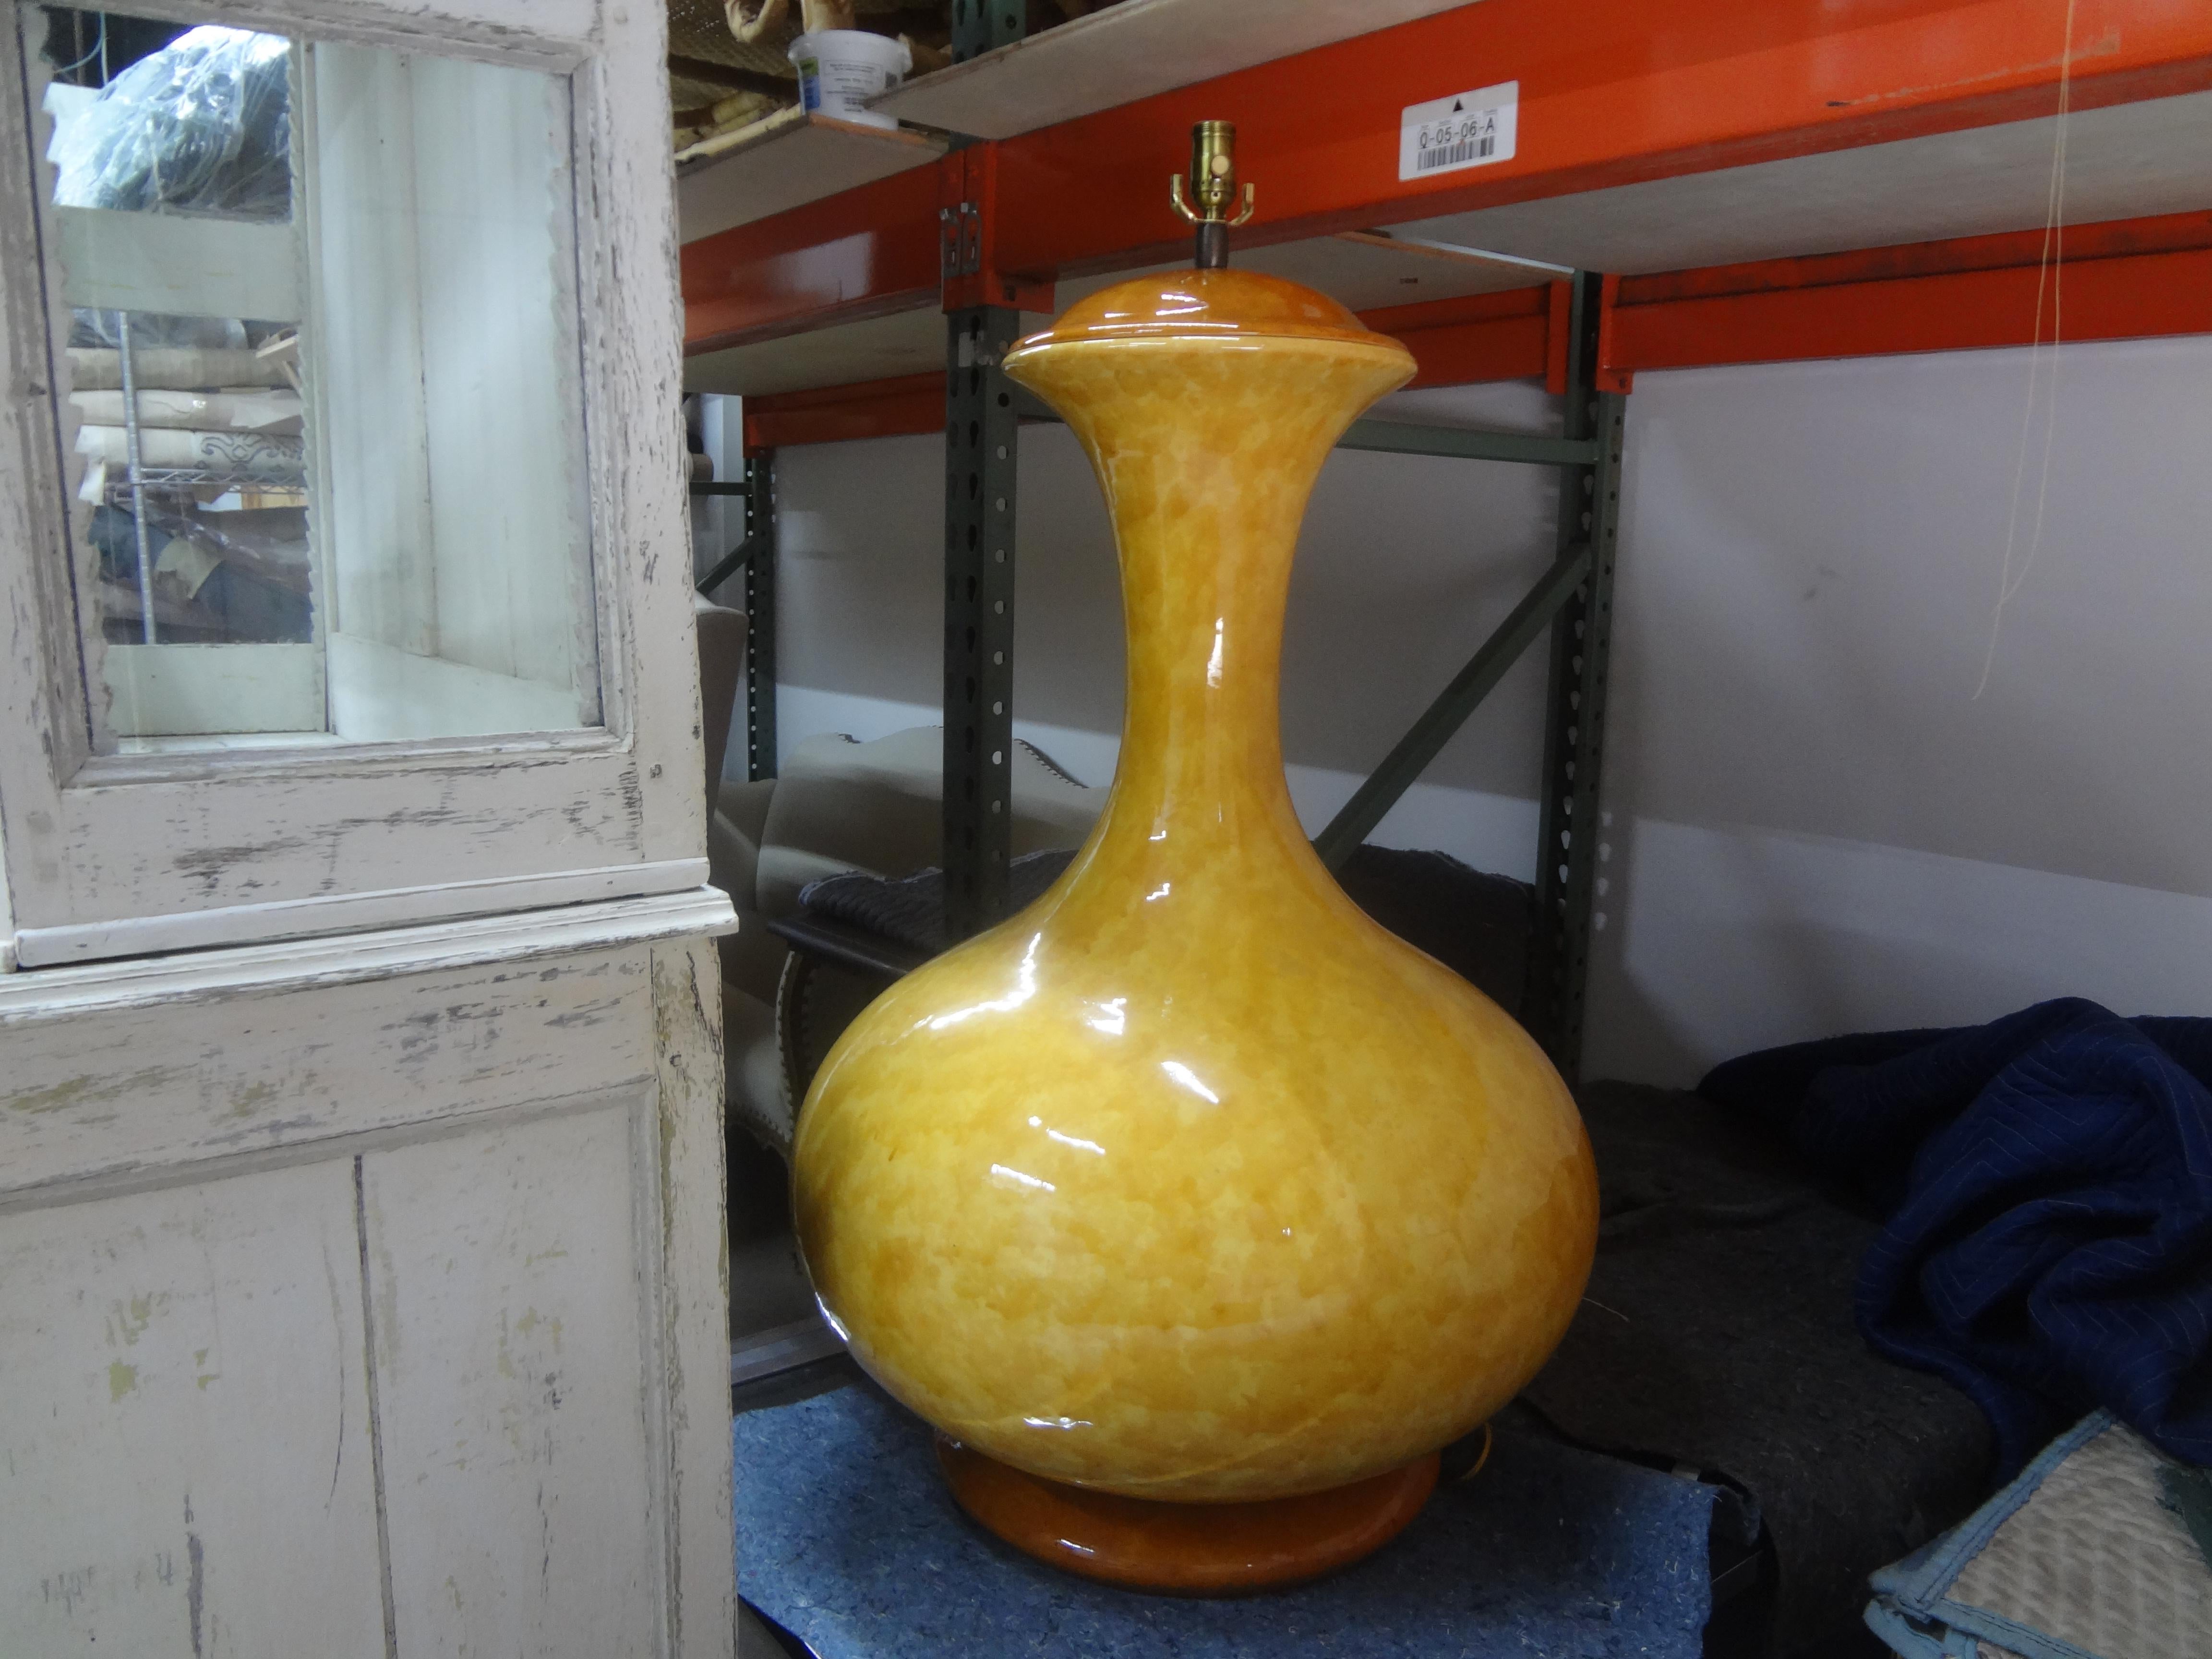 Monumentale lampe italienne du milieu du siècle en céramique émaillée. Cette étonnante lampe de table gigantesque  (41 pouces H, 29 pouces D&H) a été nouvellement câblé avec une nouvelle prise prête à recevoir l'abat-jour de votre choix.
Il s'agit